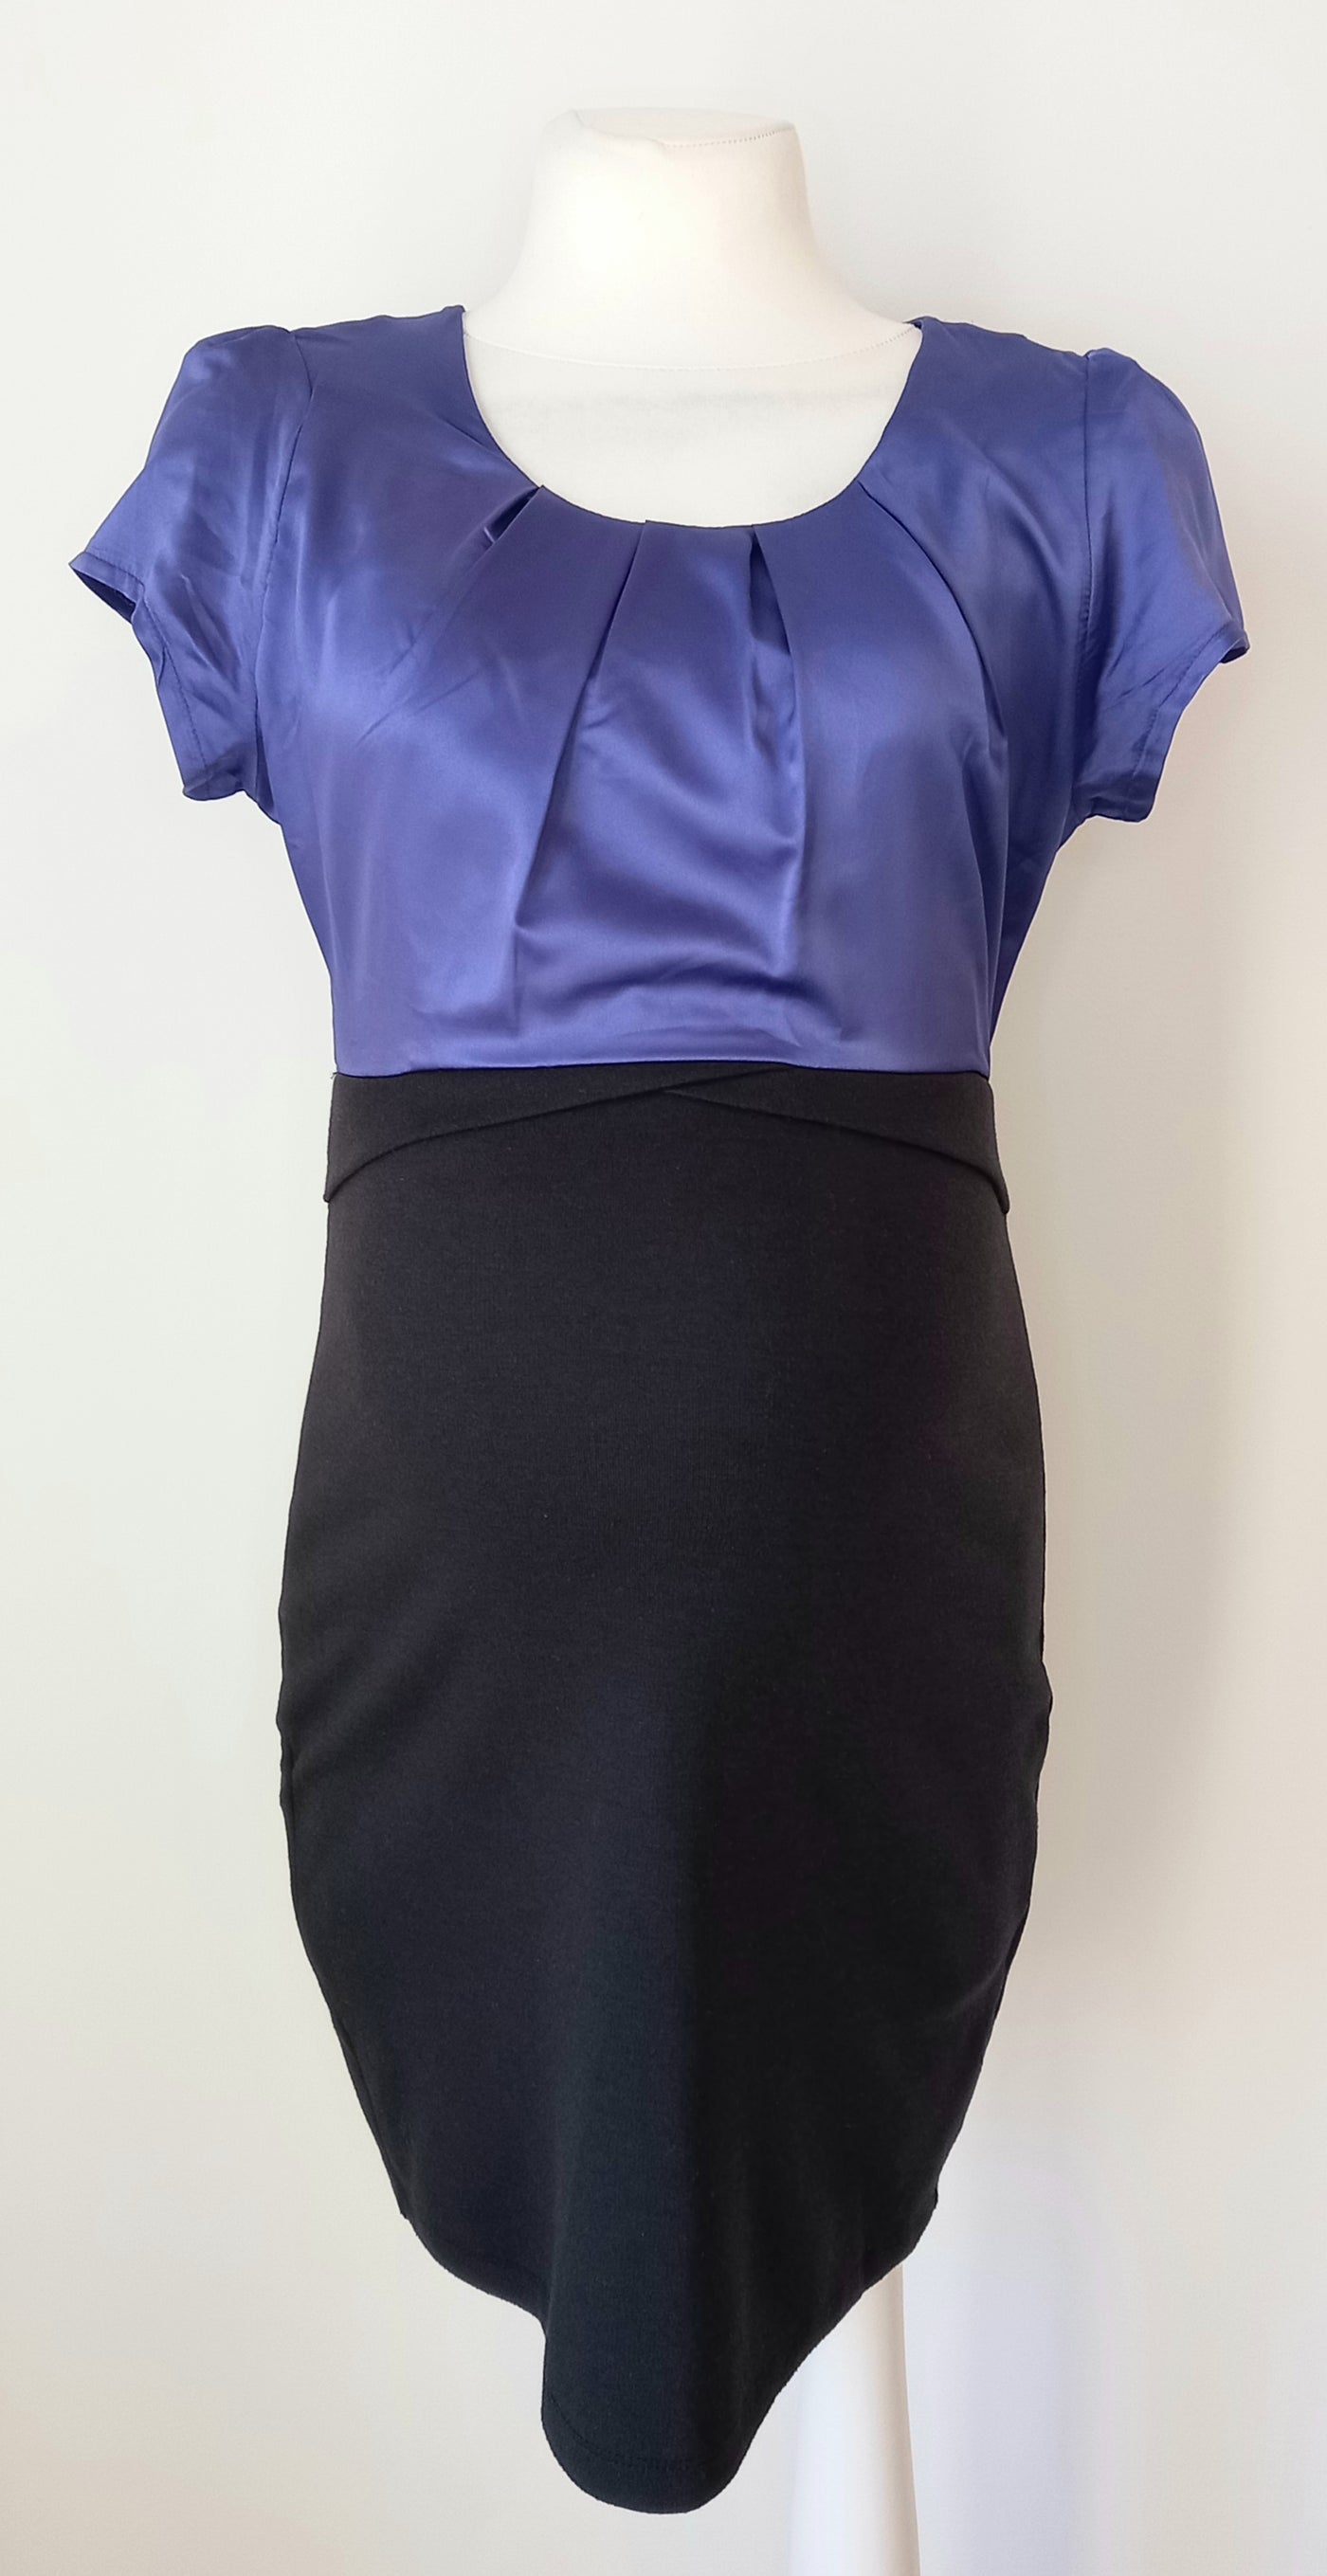 Mamalicious Black & Purple Dress - Size M (Approx UK 10)